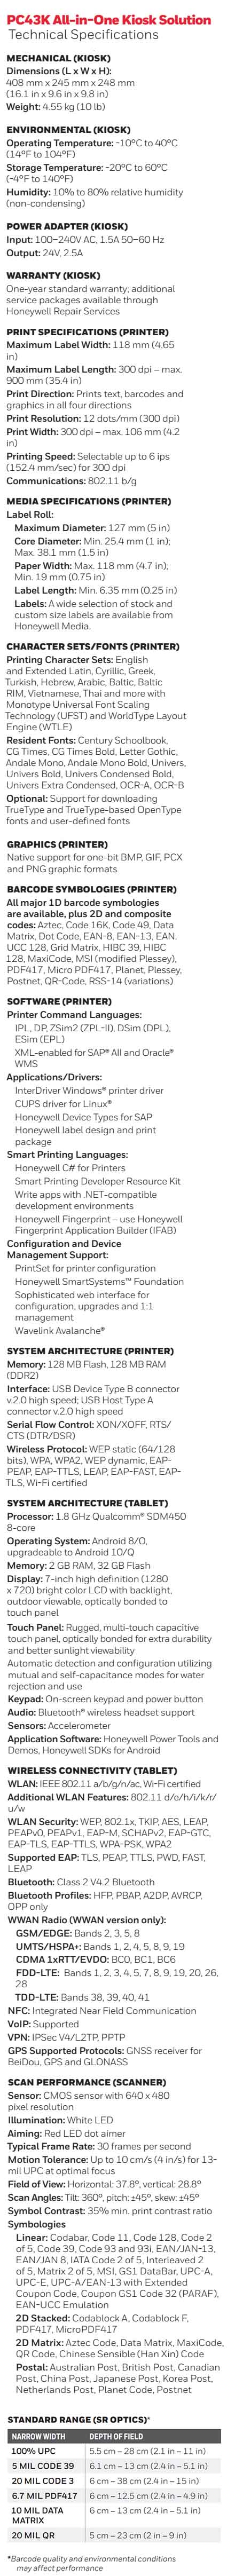 Hoja de datos de la impresora de escritorio Honeywell PC43K Kiosk Solution